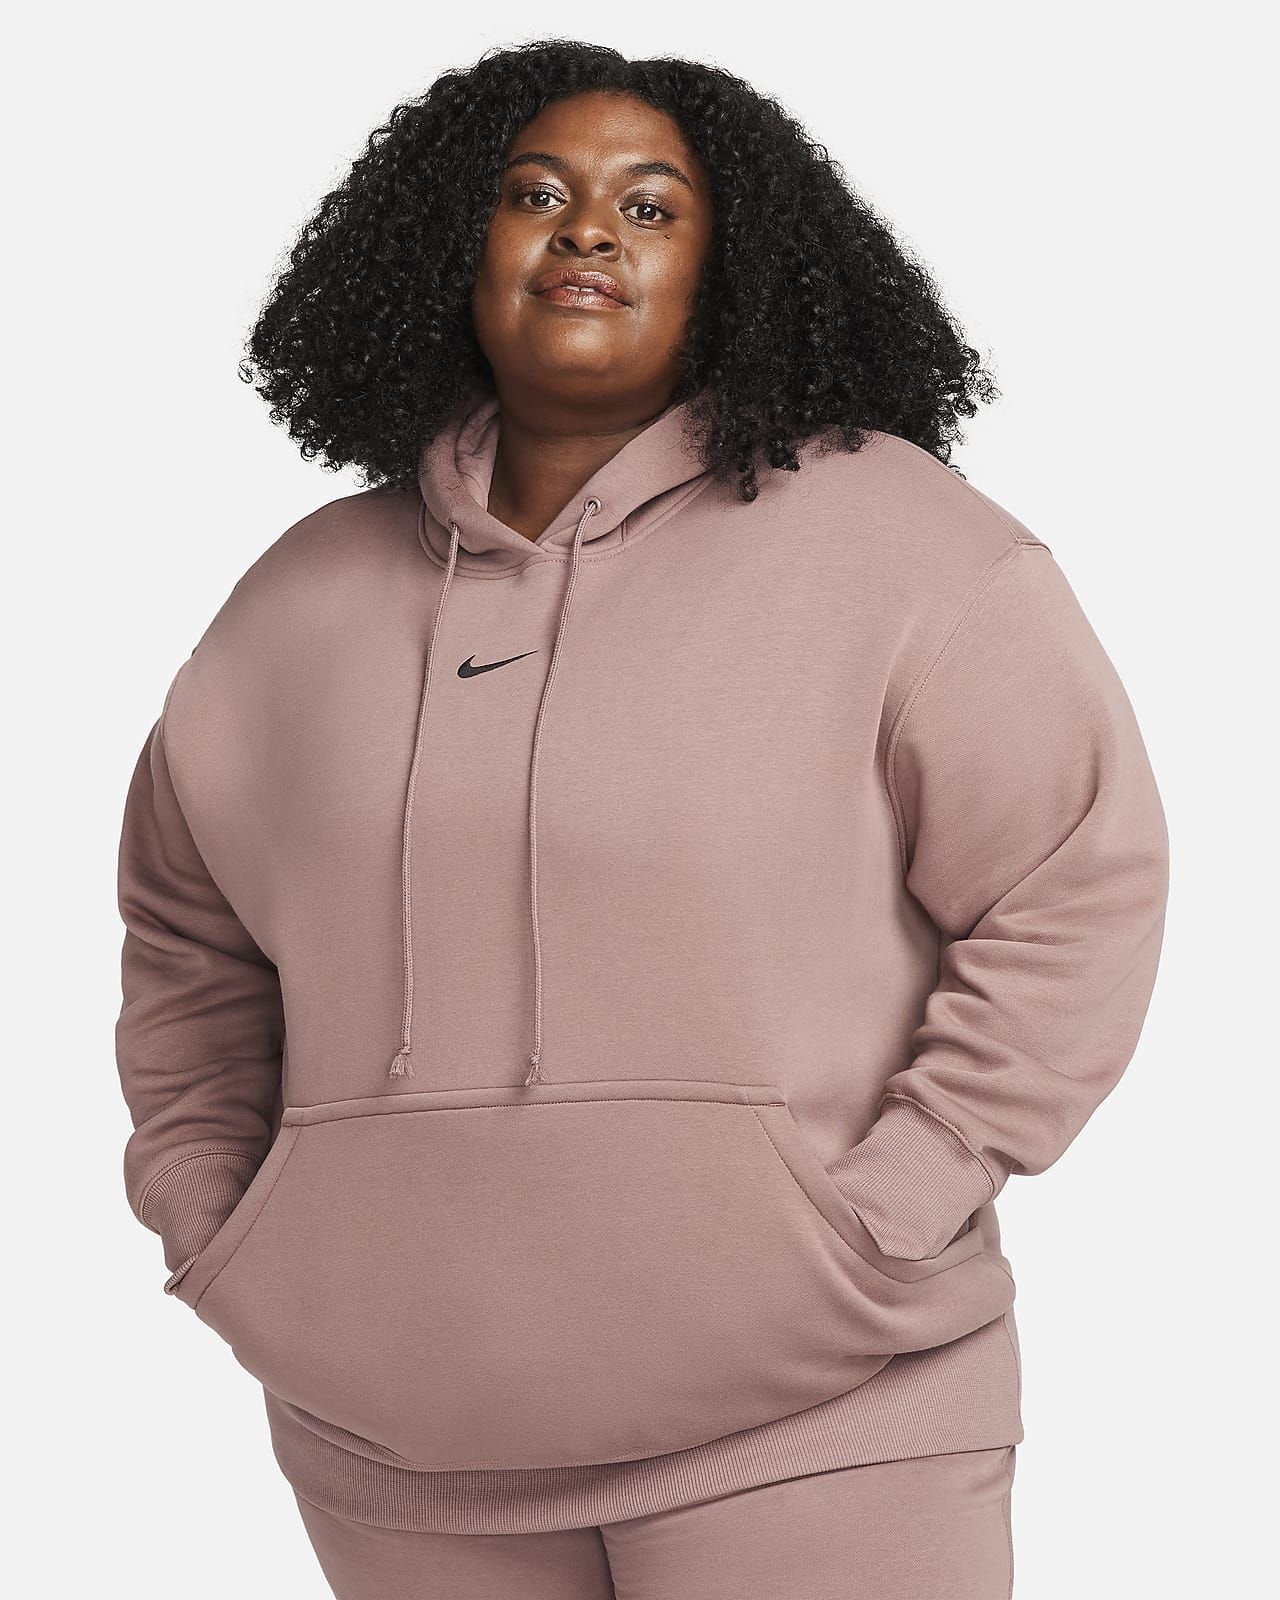 Nike Sportswear Phoenix Fleece Women's Oversized Pullover Hoodie (Plus Size). Nike.com | Nike (US)